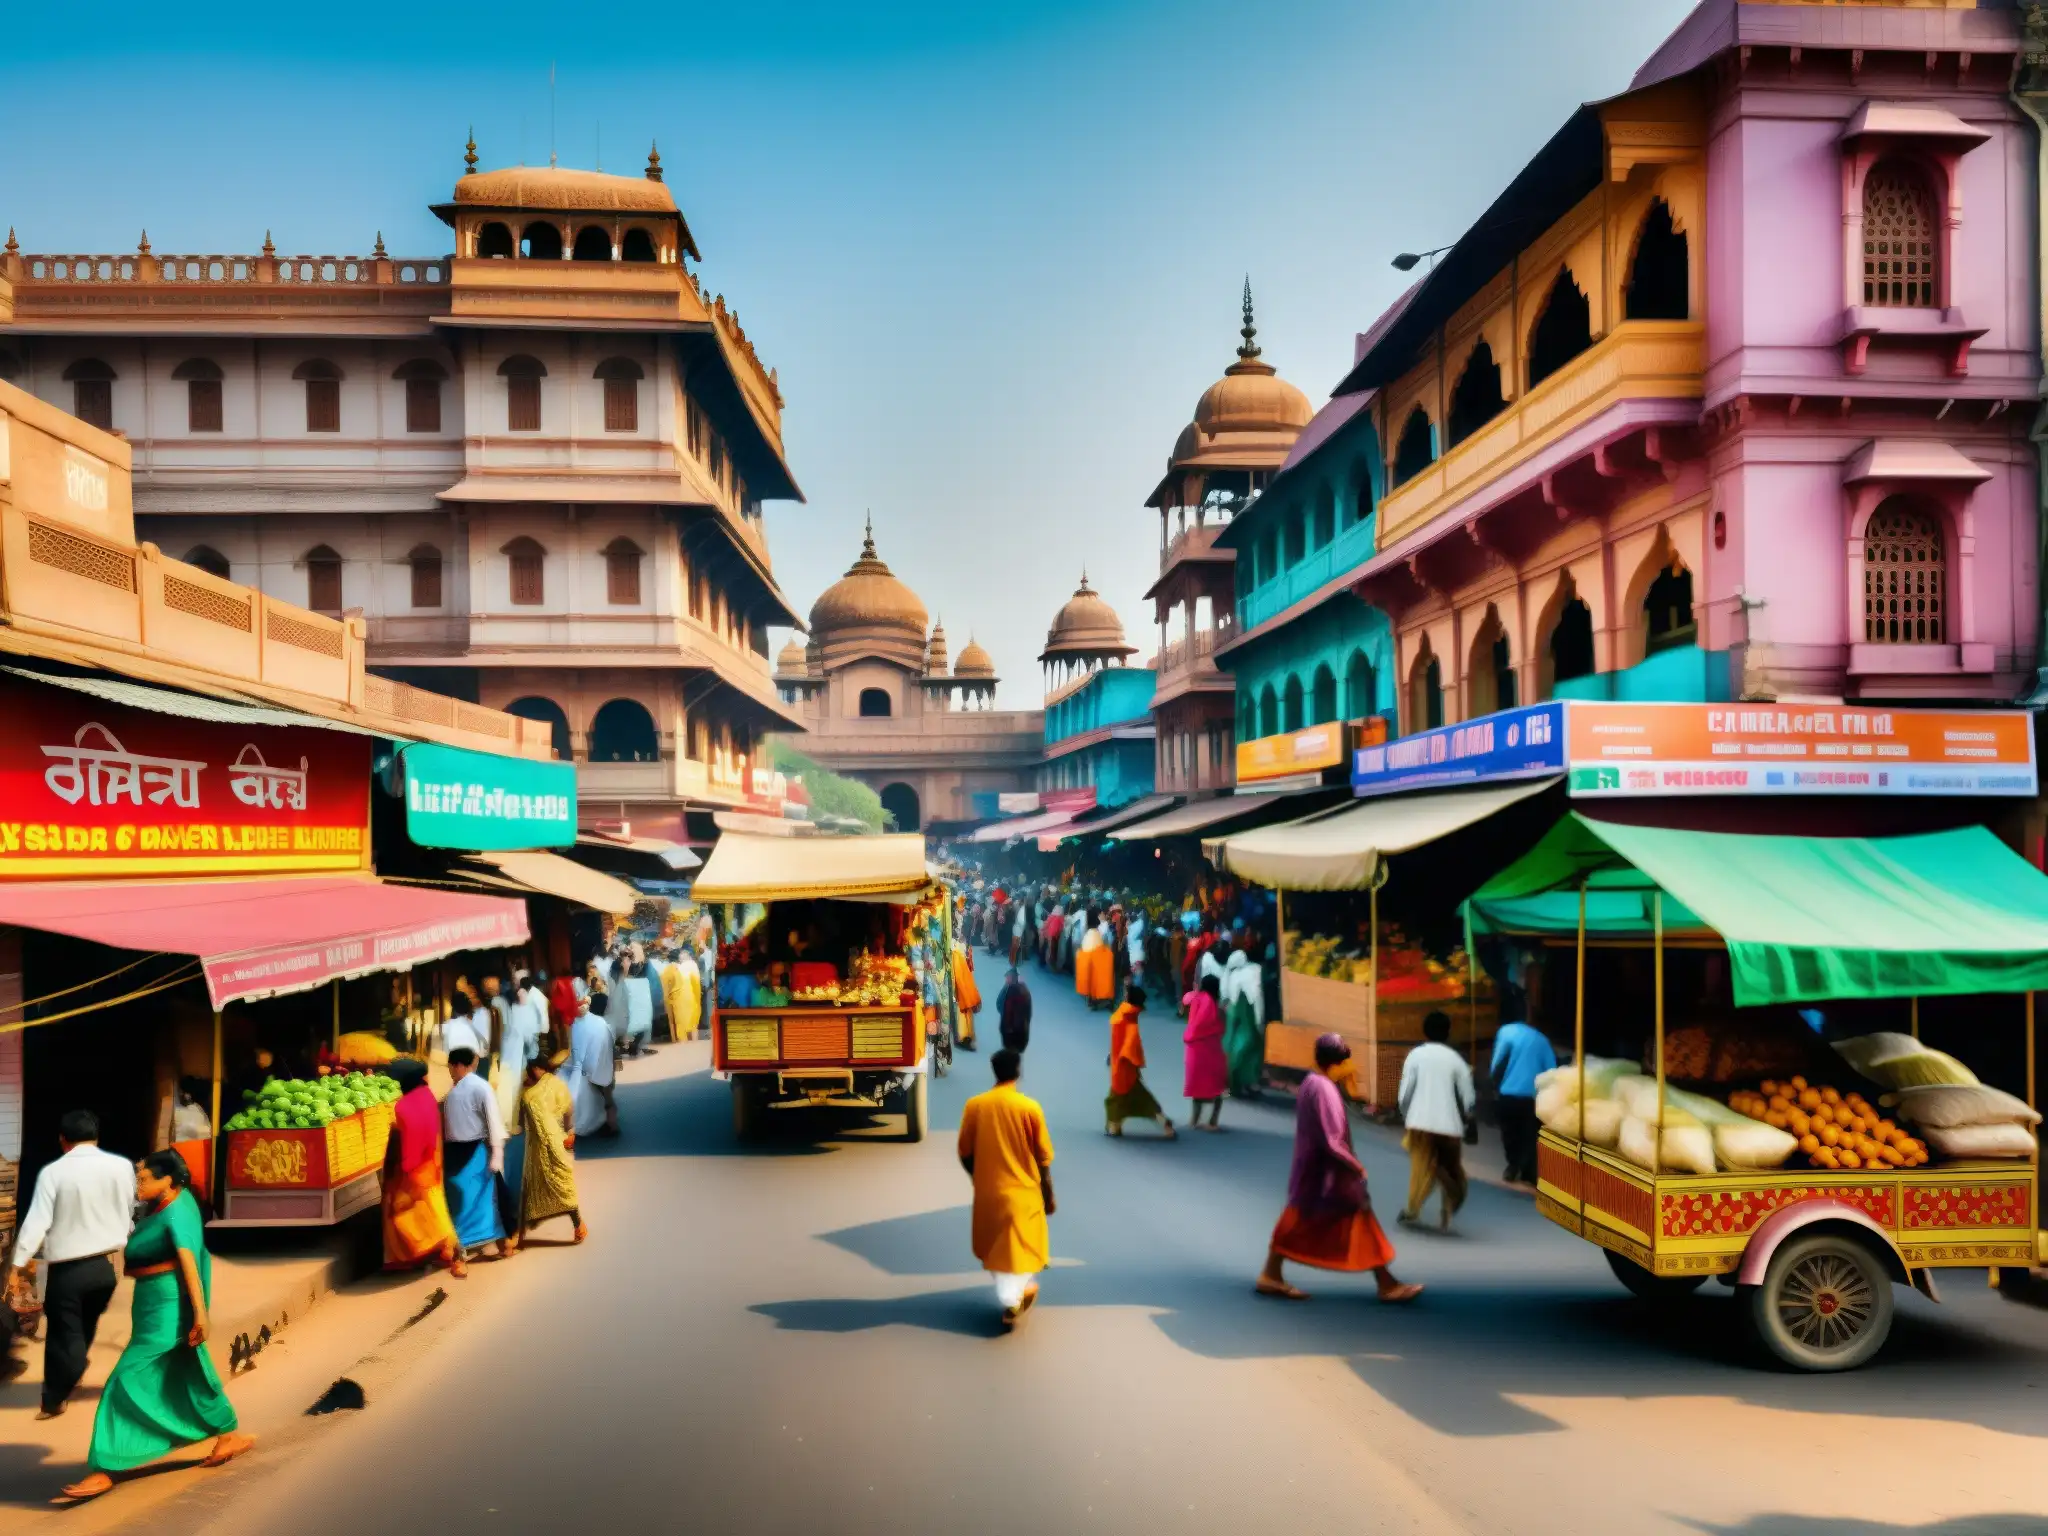 Vibrante escena urbana en la India, muestra la vida cotidiana y la cultura hindú moderna